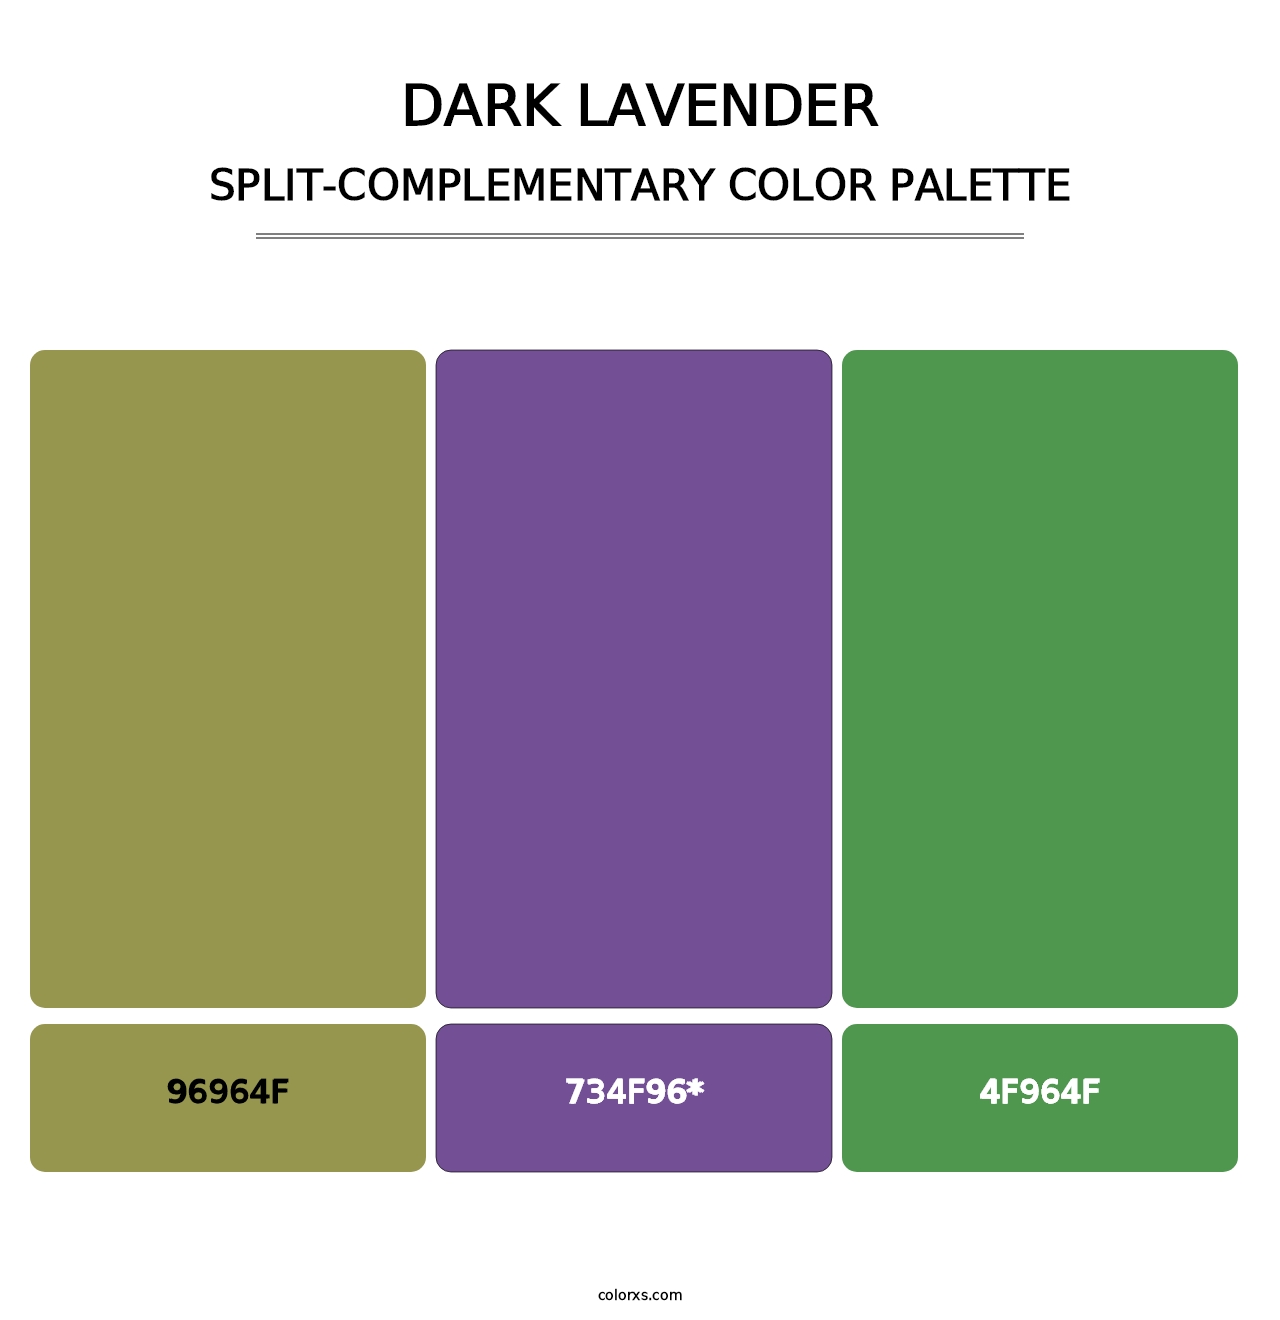 Dark Lavender - Split-Complementary Color Palette